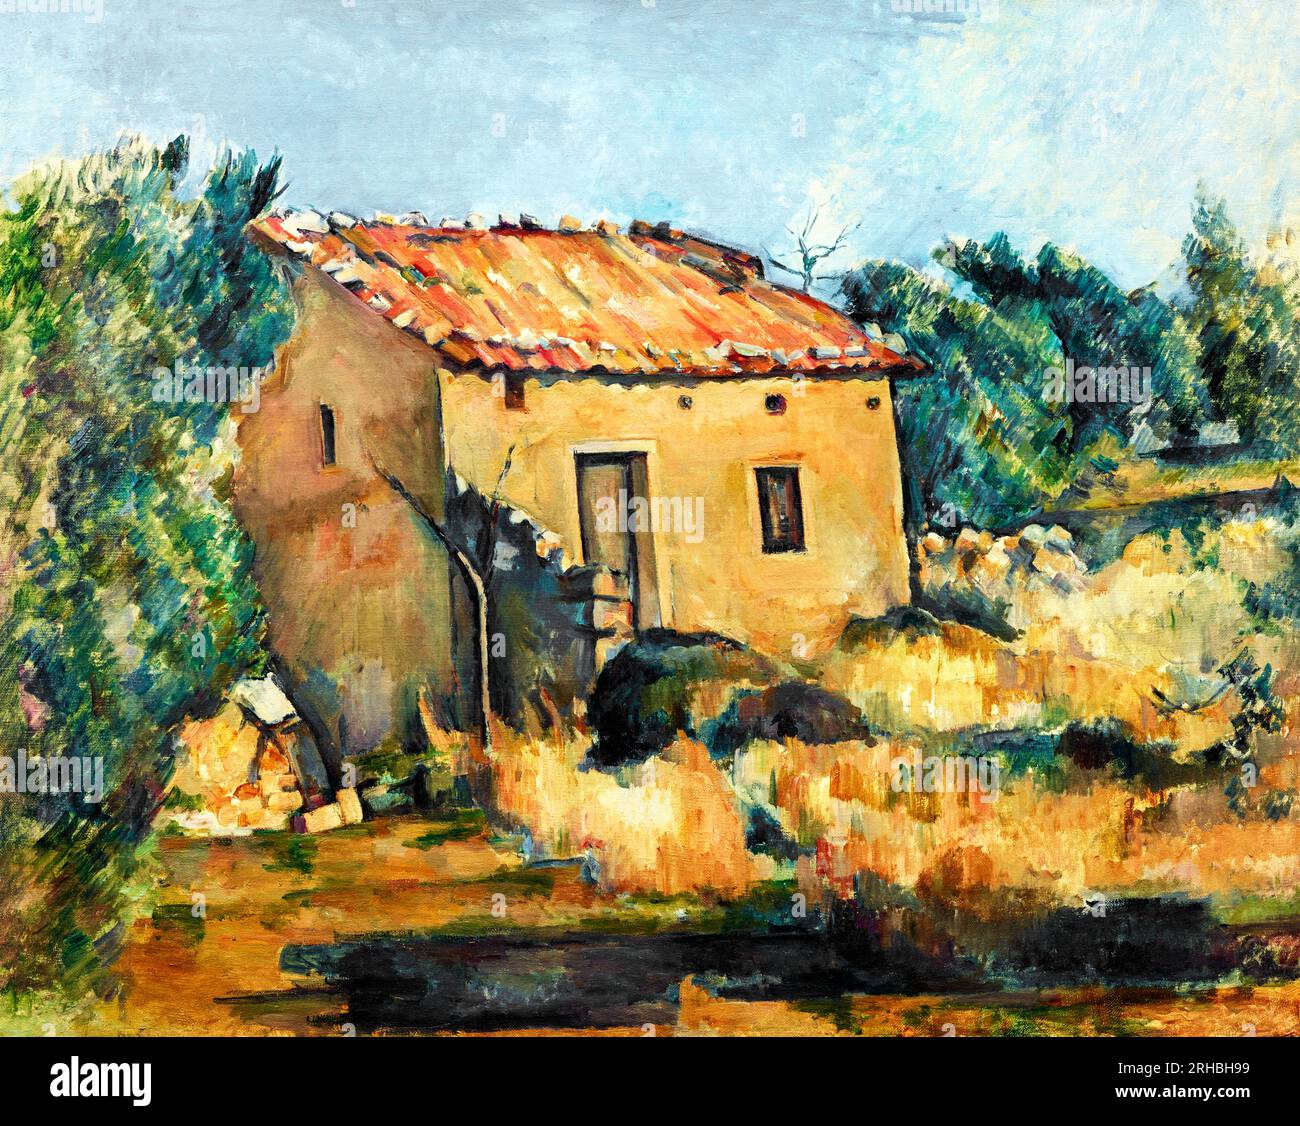 Maison abandonnée de Paul Cézanne près de la peinture de paysage d'Aix-en-Provence. Original du Dallas Museum of Art Banque D'Images